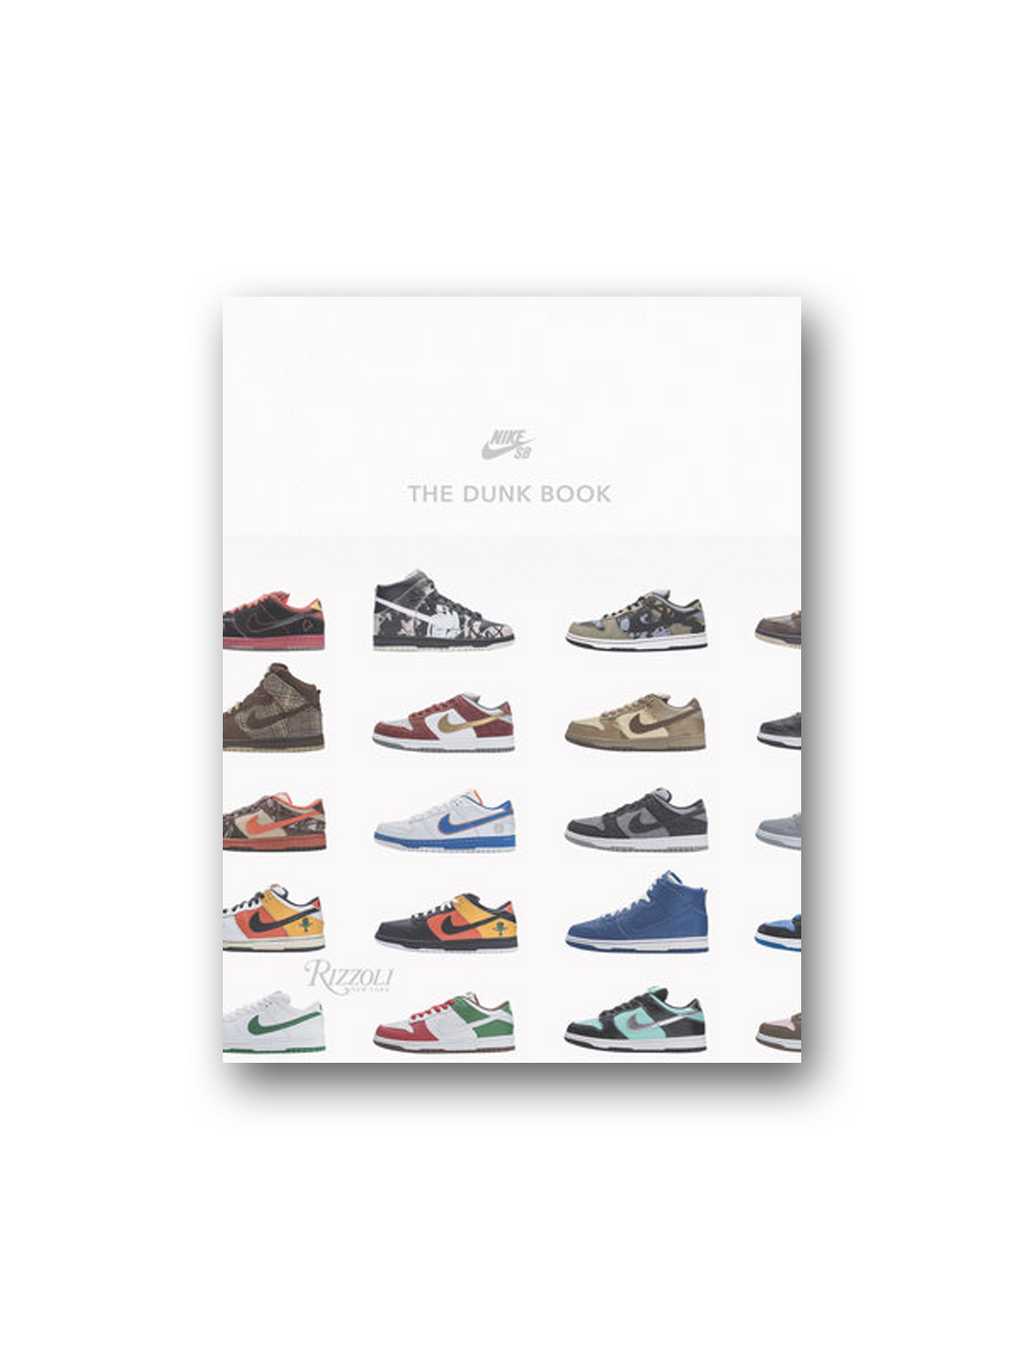 Nike SB: The Dunk Book